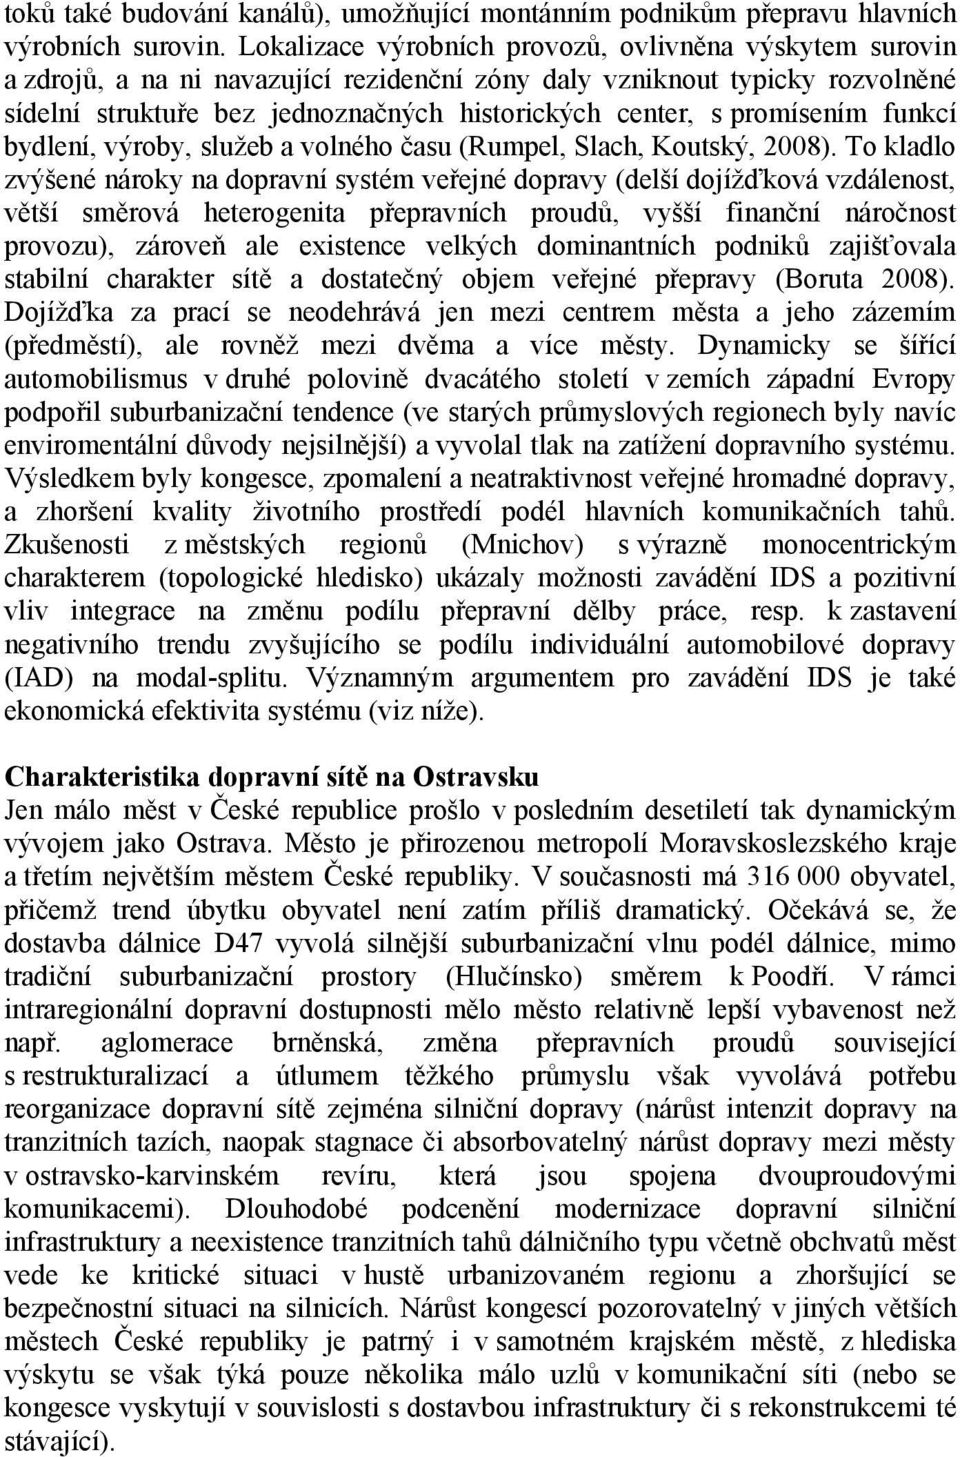 promísením funkcí bydlení, výroby, služeb a volného času (Rumpel, Slach, Koutský, 2008).